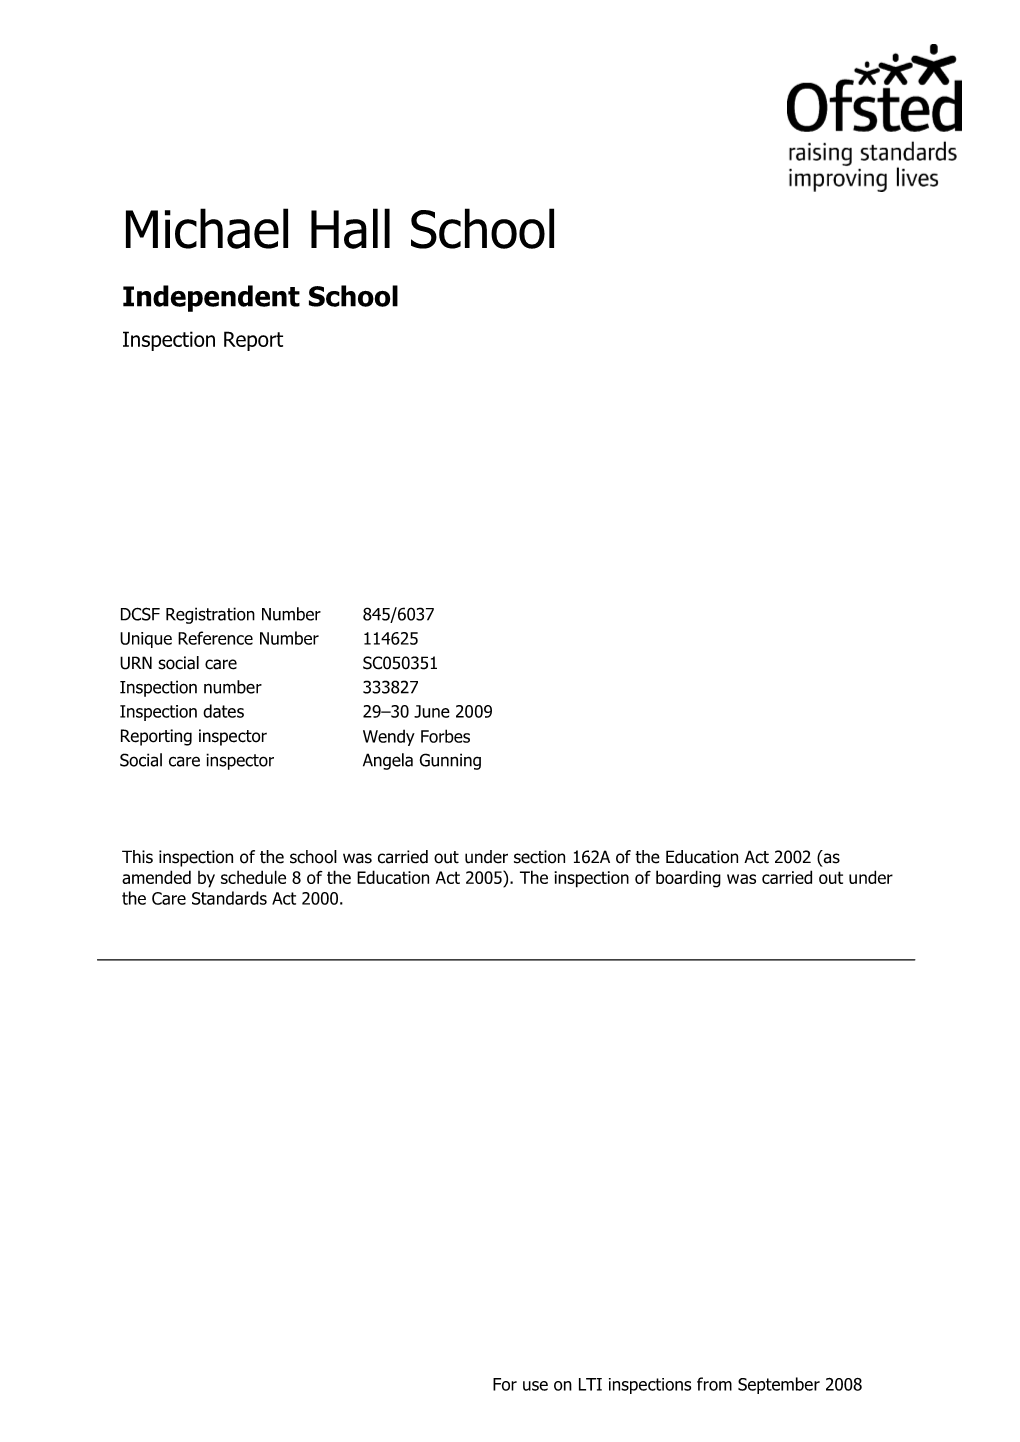 Michael Hall School Independent School Inspection Report